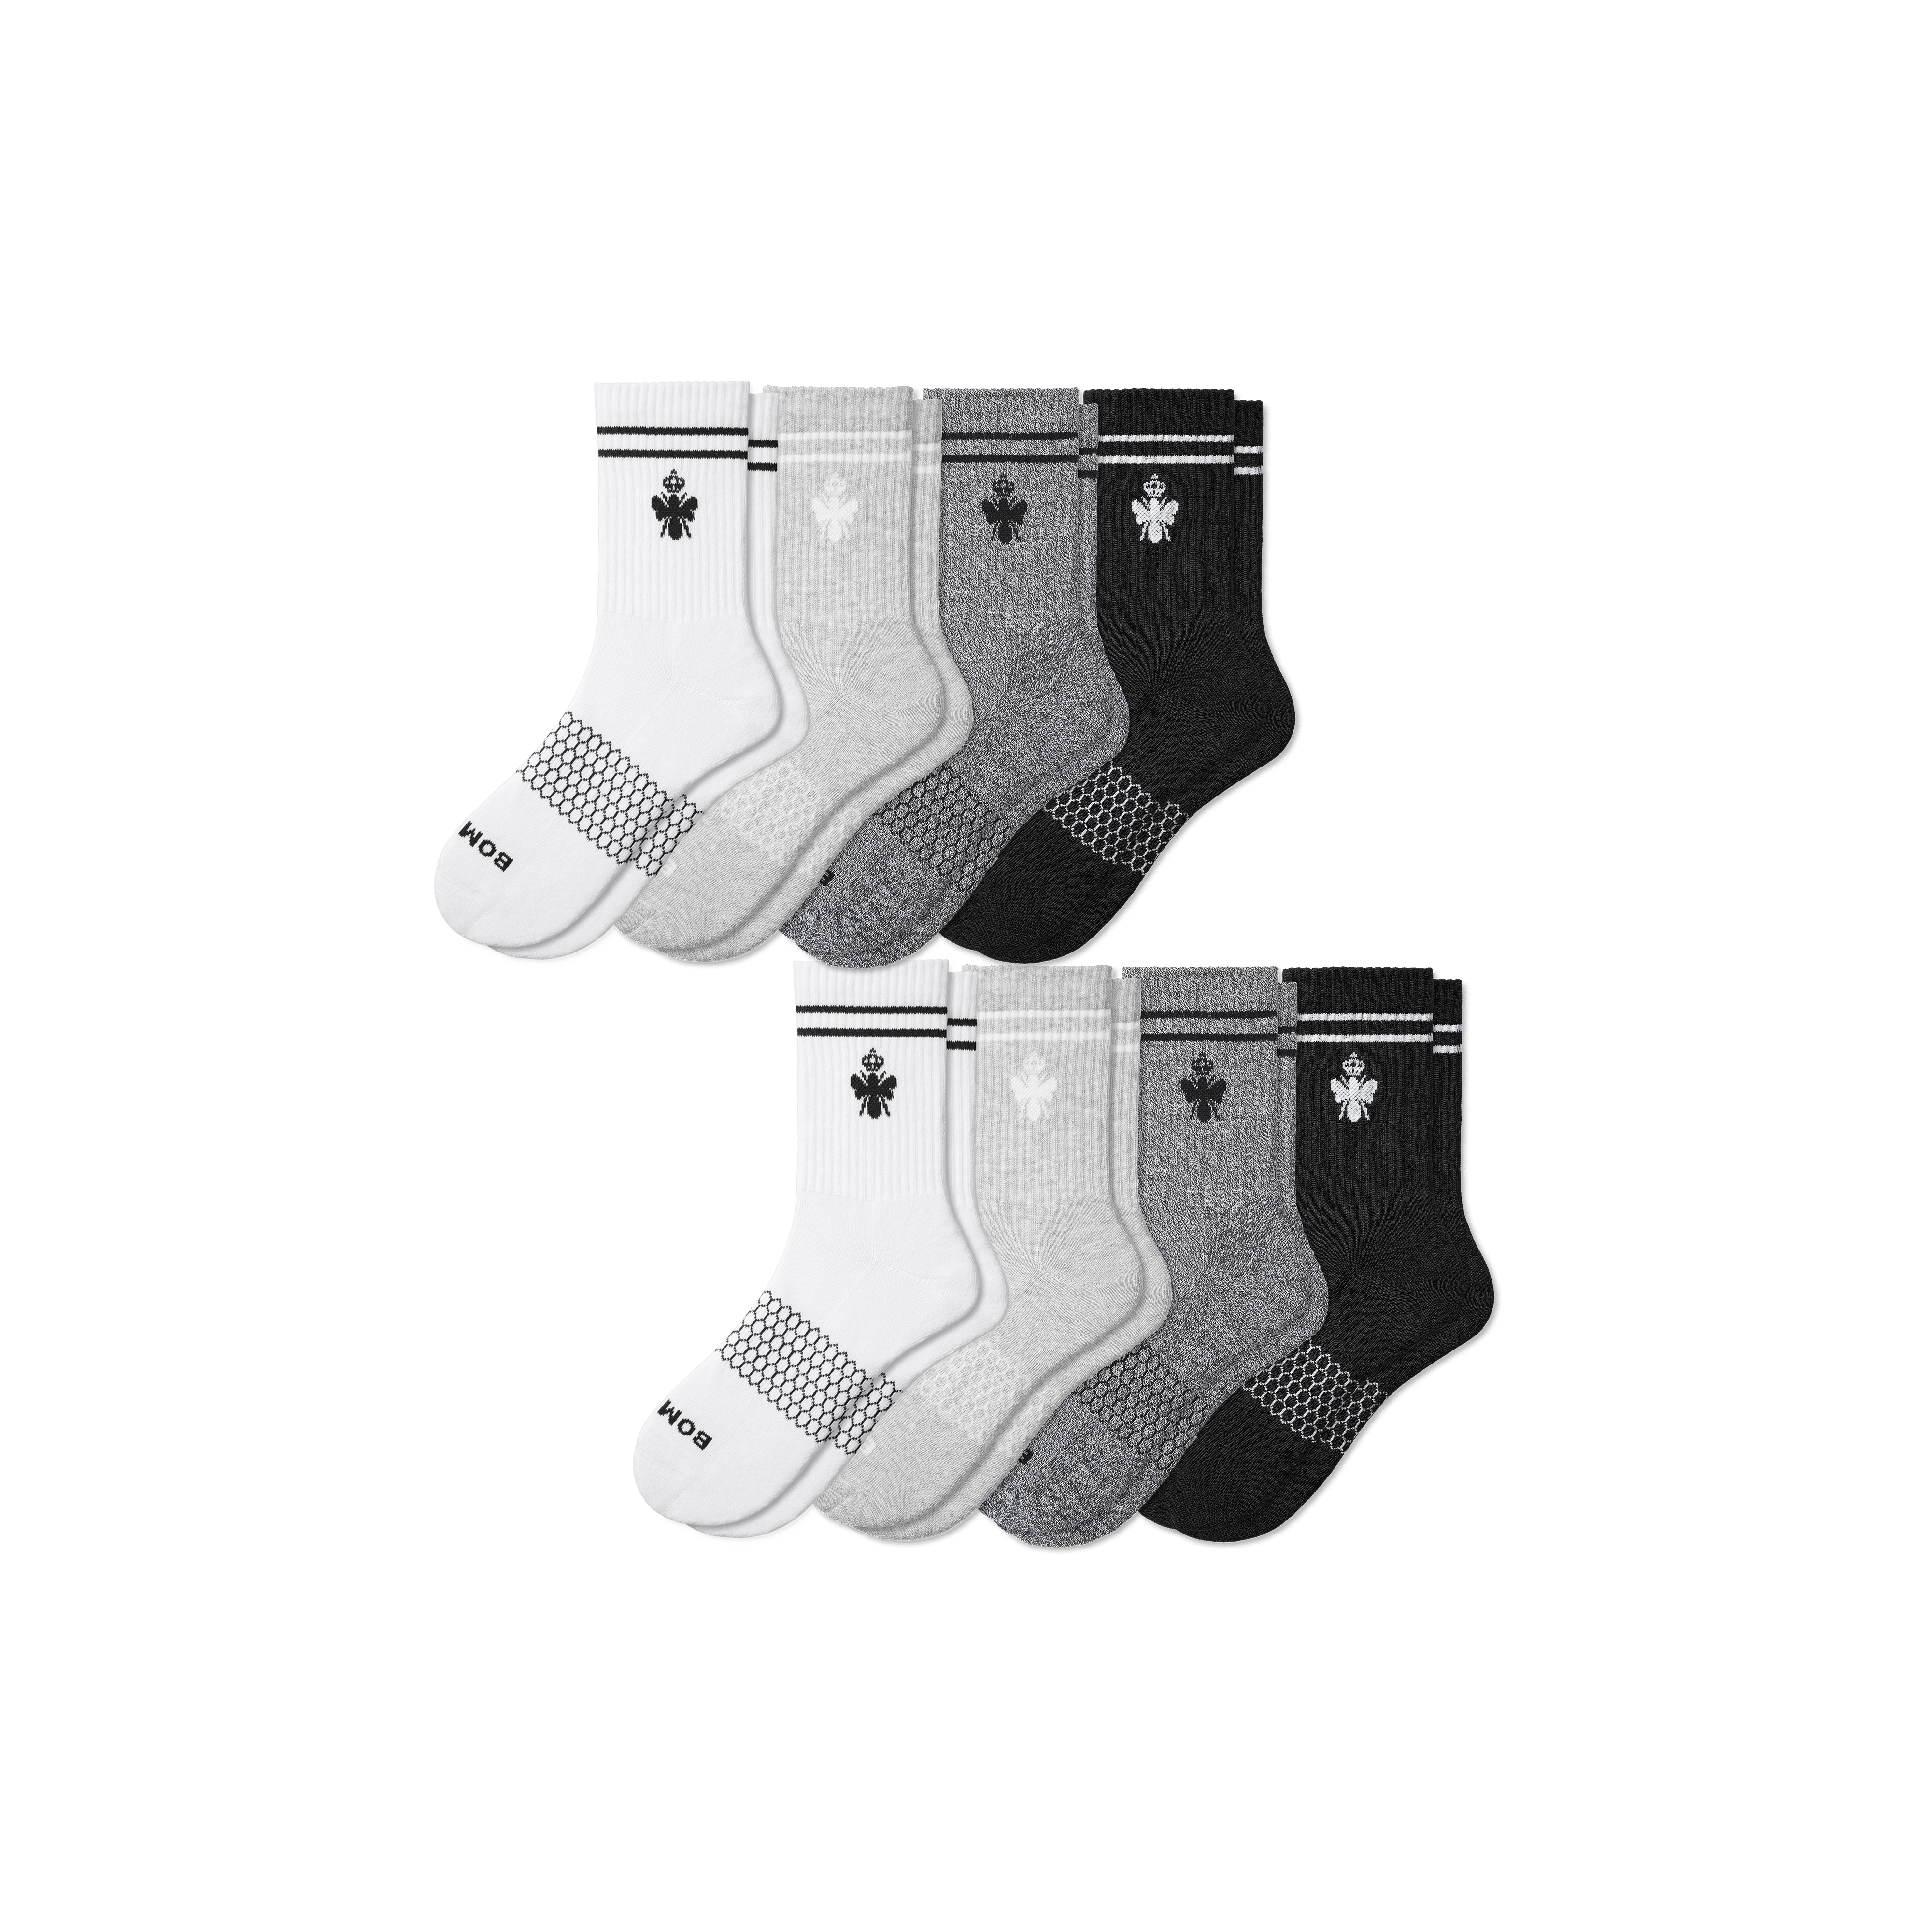 Bombas Originals Half Calf Sock 8-pack In Shades Mix